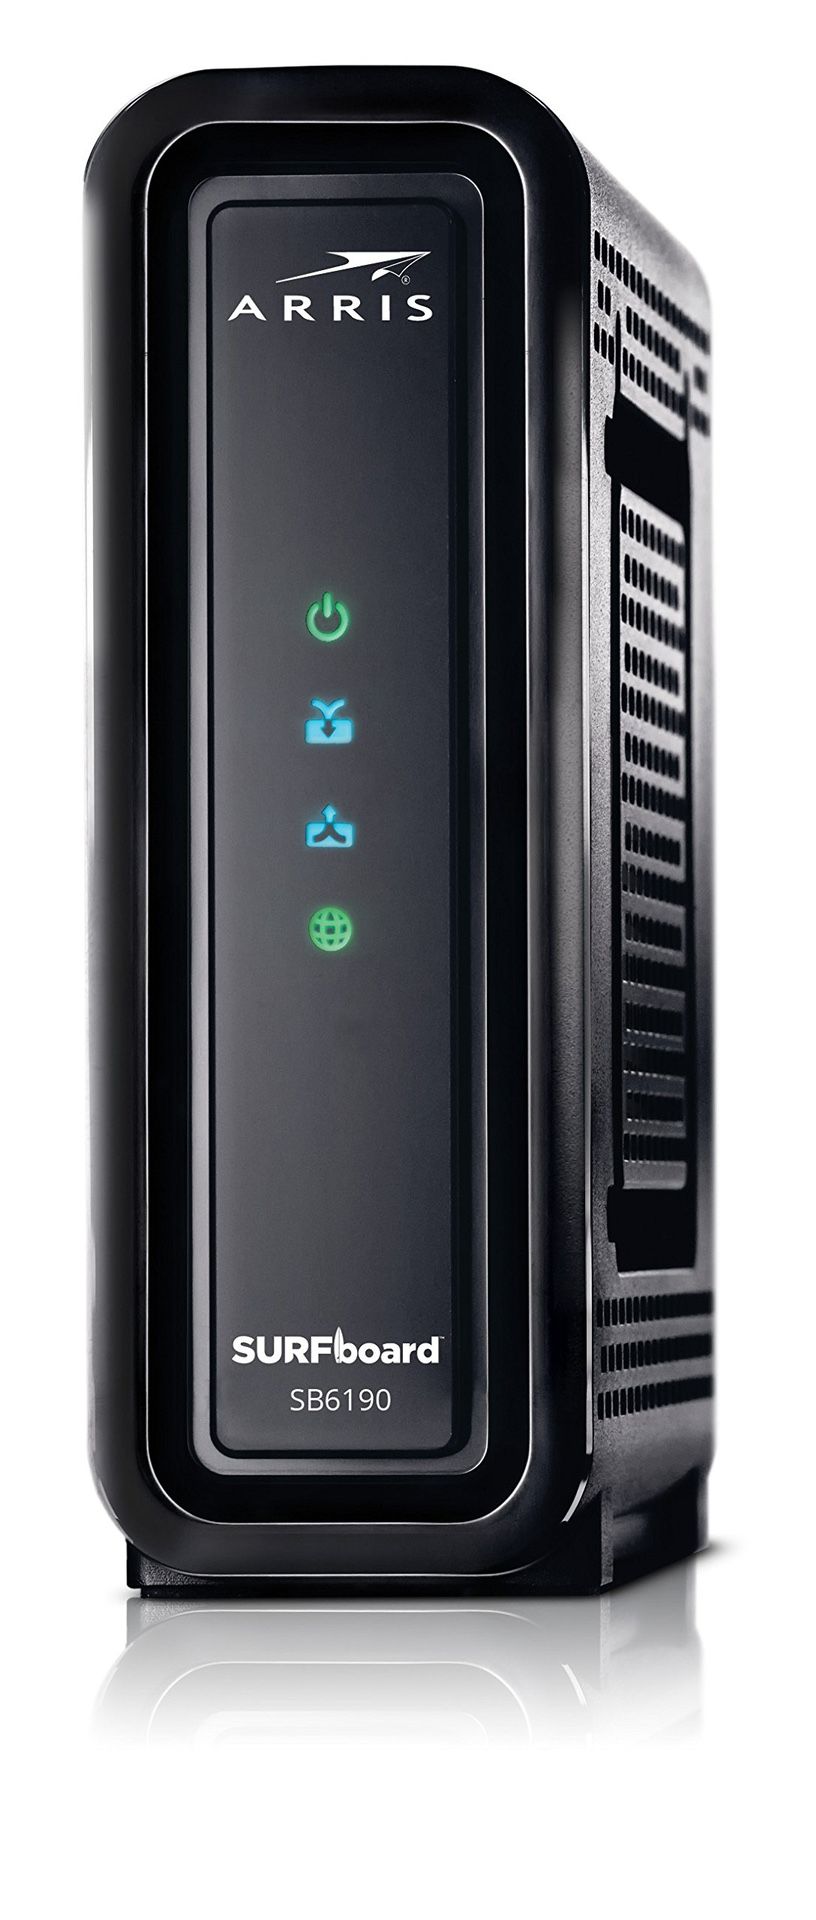 ARRIS Surfboard: DOCSIS 3.0 Cable Modem